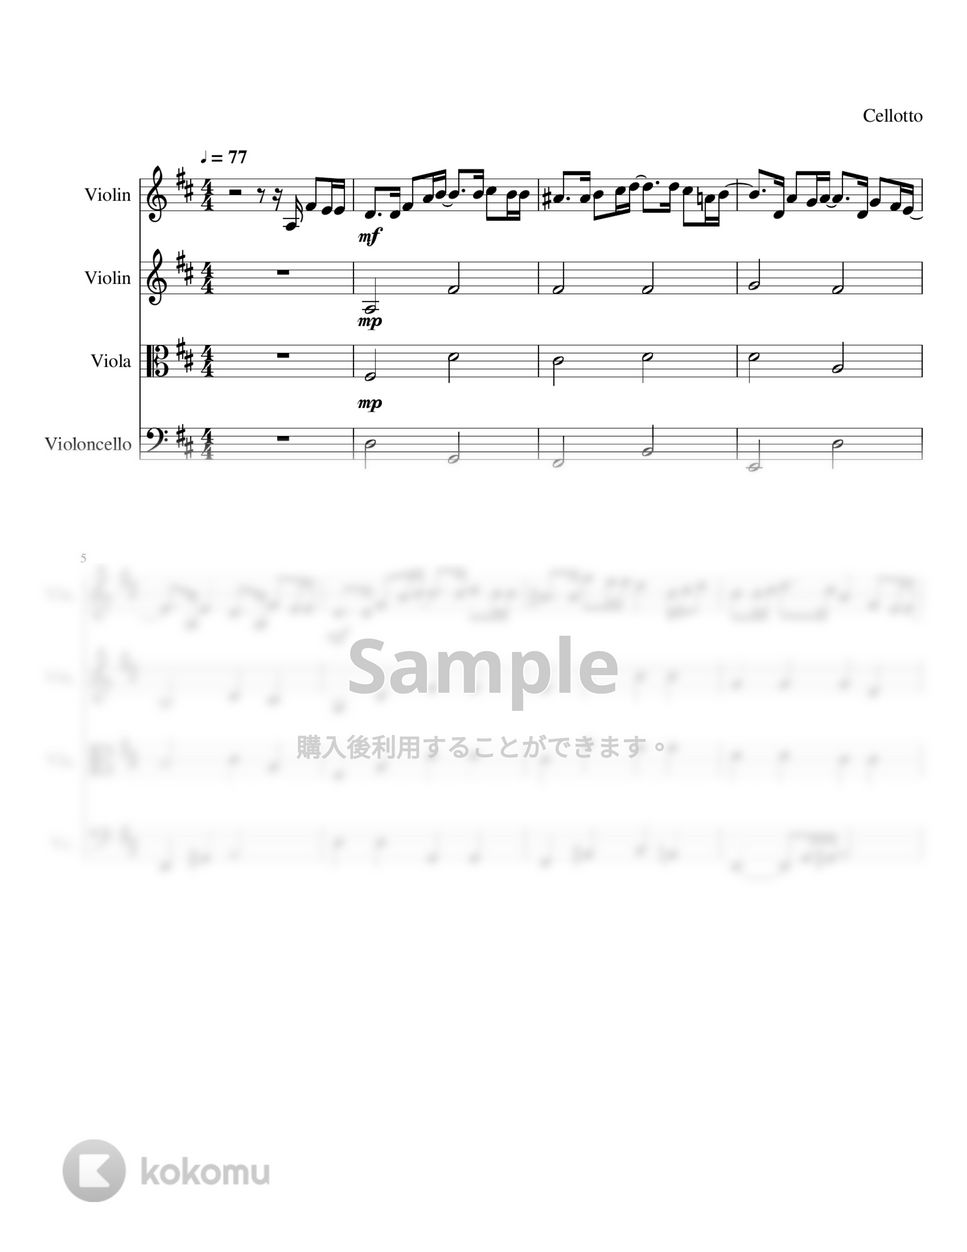 菅田将暉 - まちがいさがし【弦楽四重奏】 by Cellotto